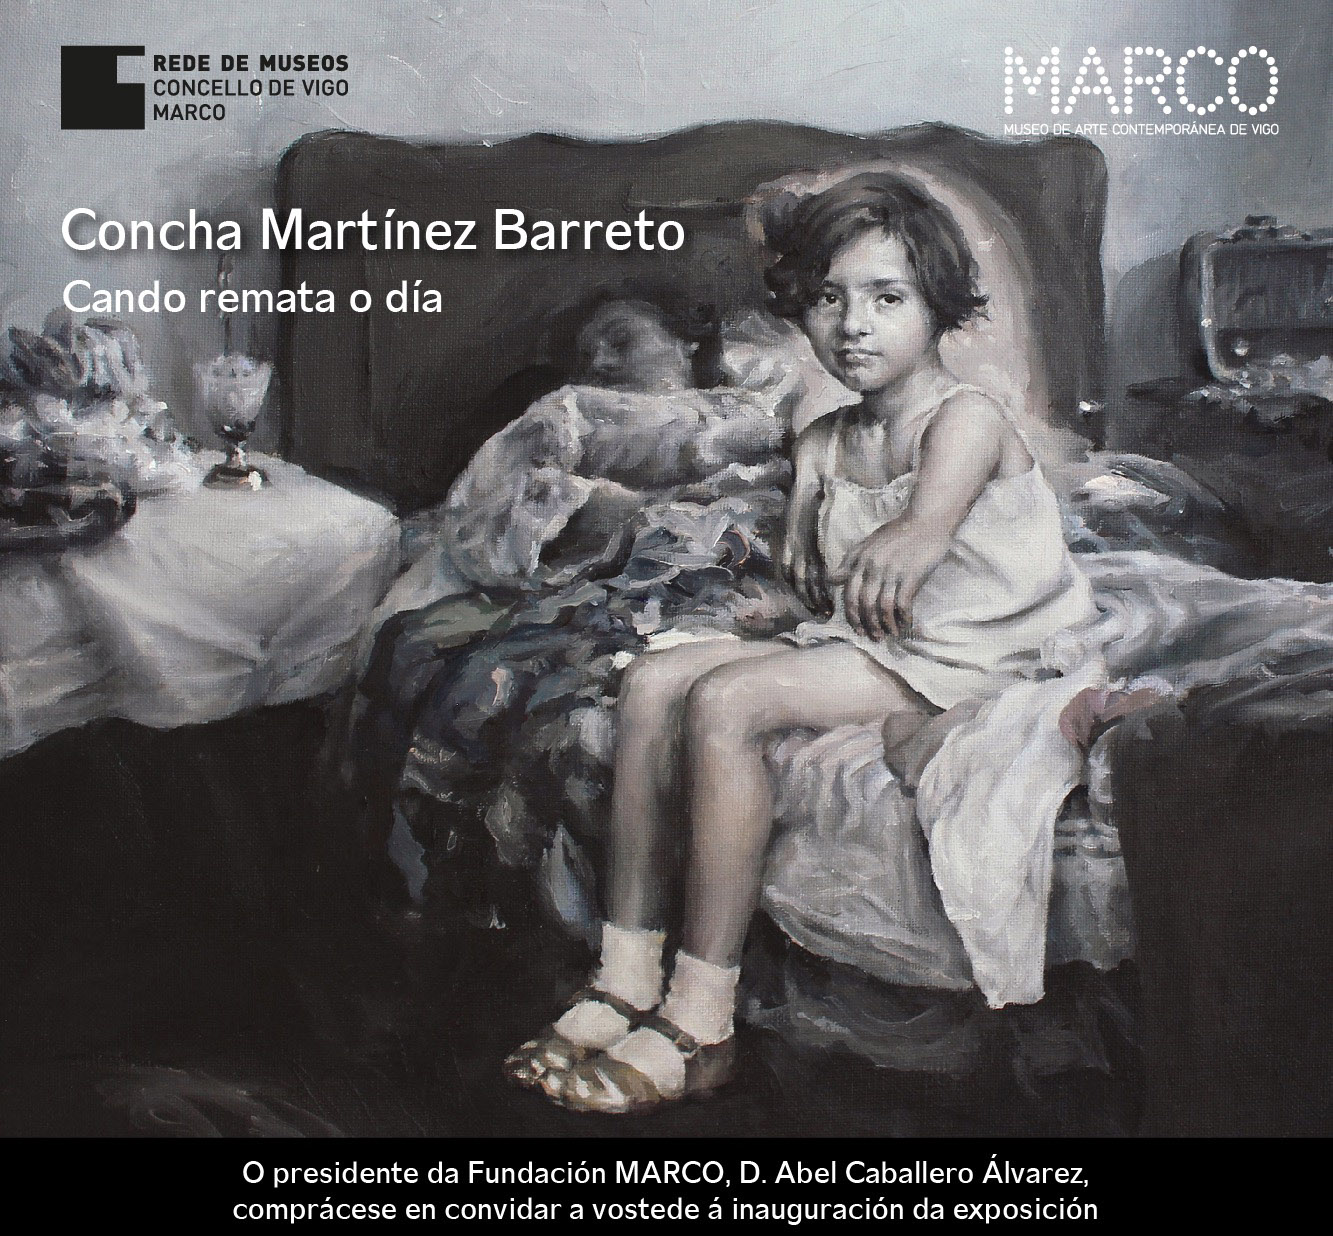 Concha Martínez Barreto at MARCO of Vigo, Spain